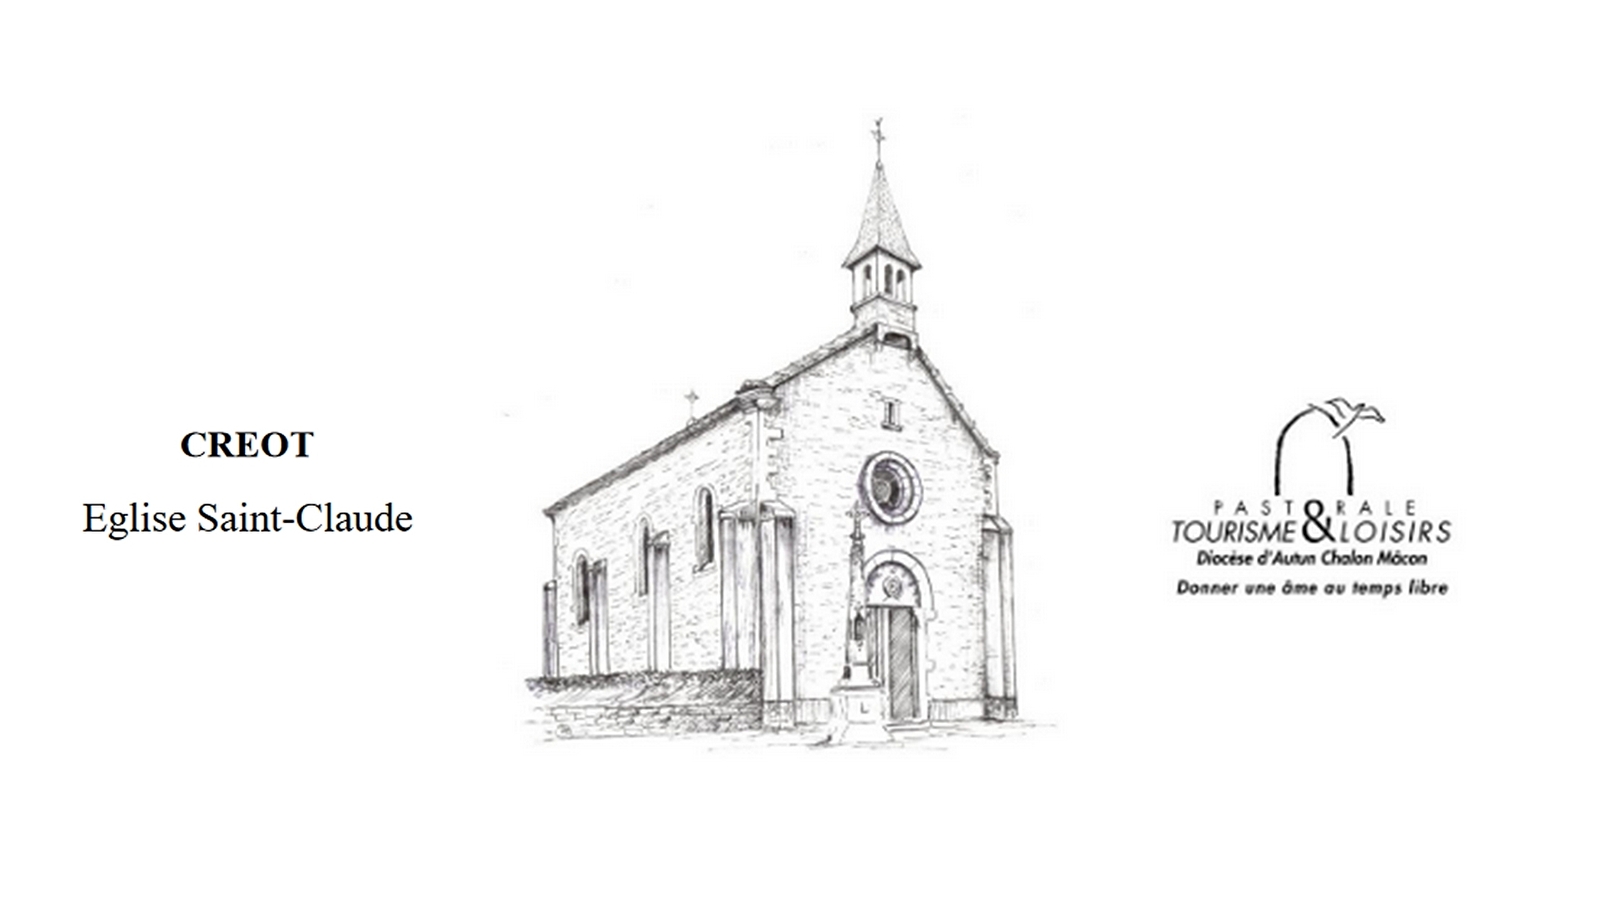 Eglise Saint-Claude